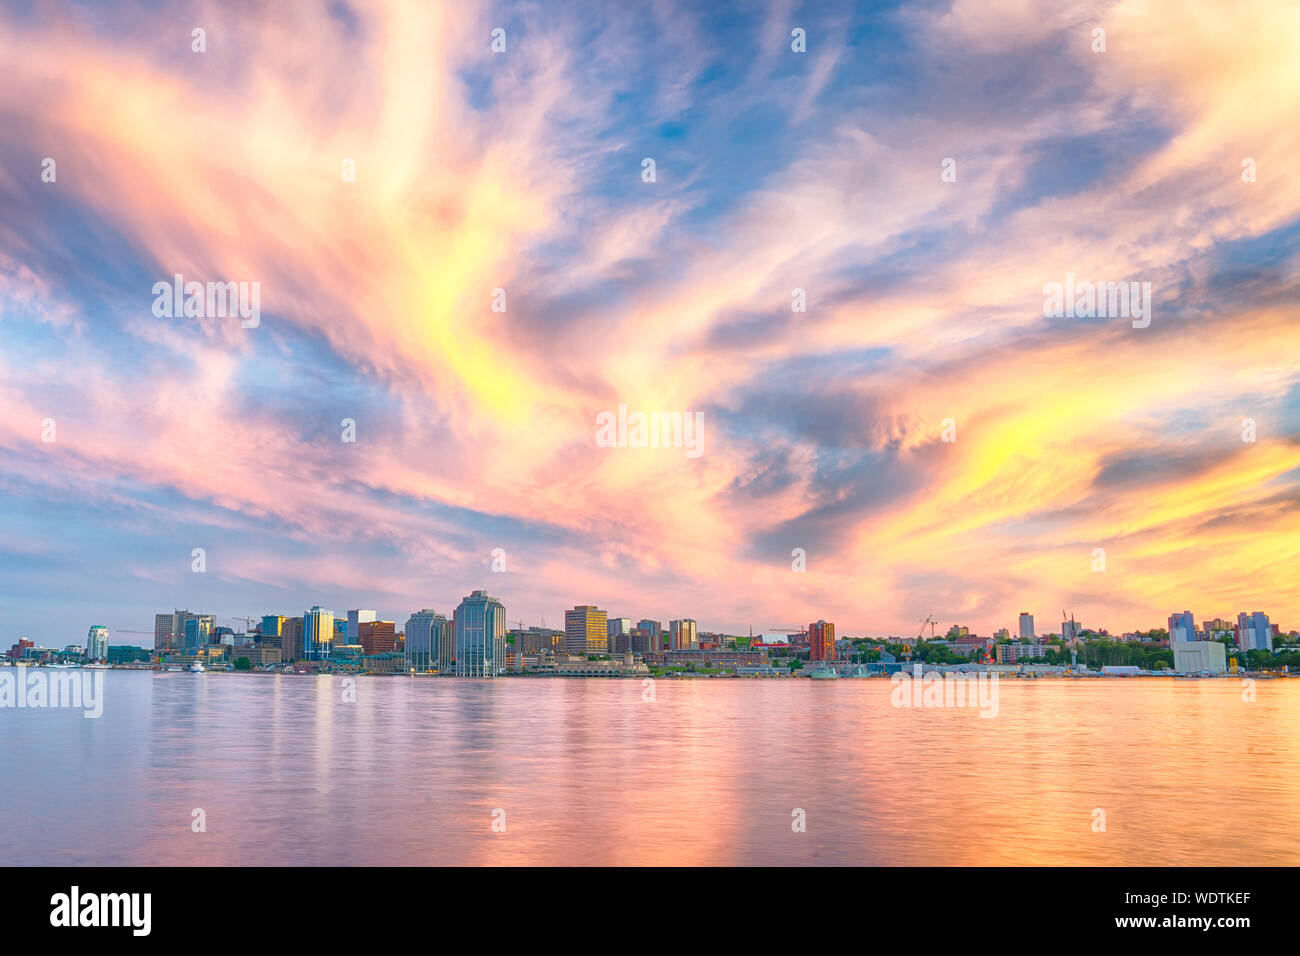 Au cours de l'cloudscape incroyable Halifax, Nova Scotia ville skyline at sunset Banque D'Images